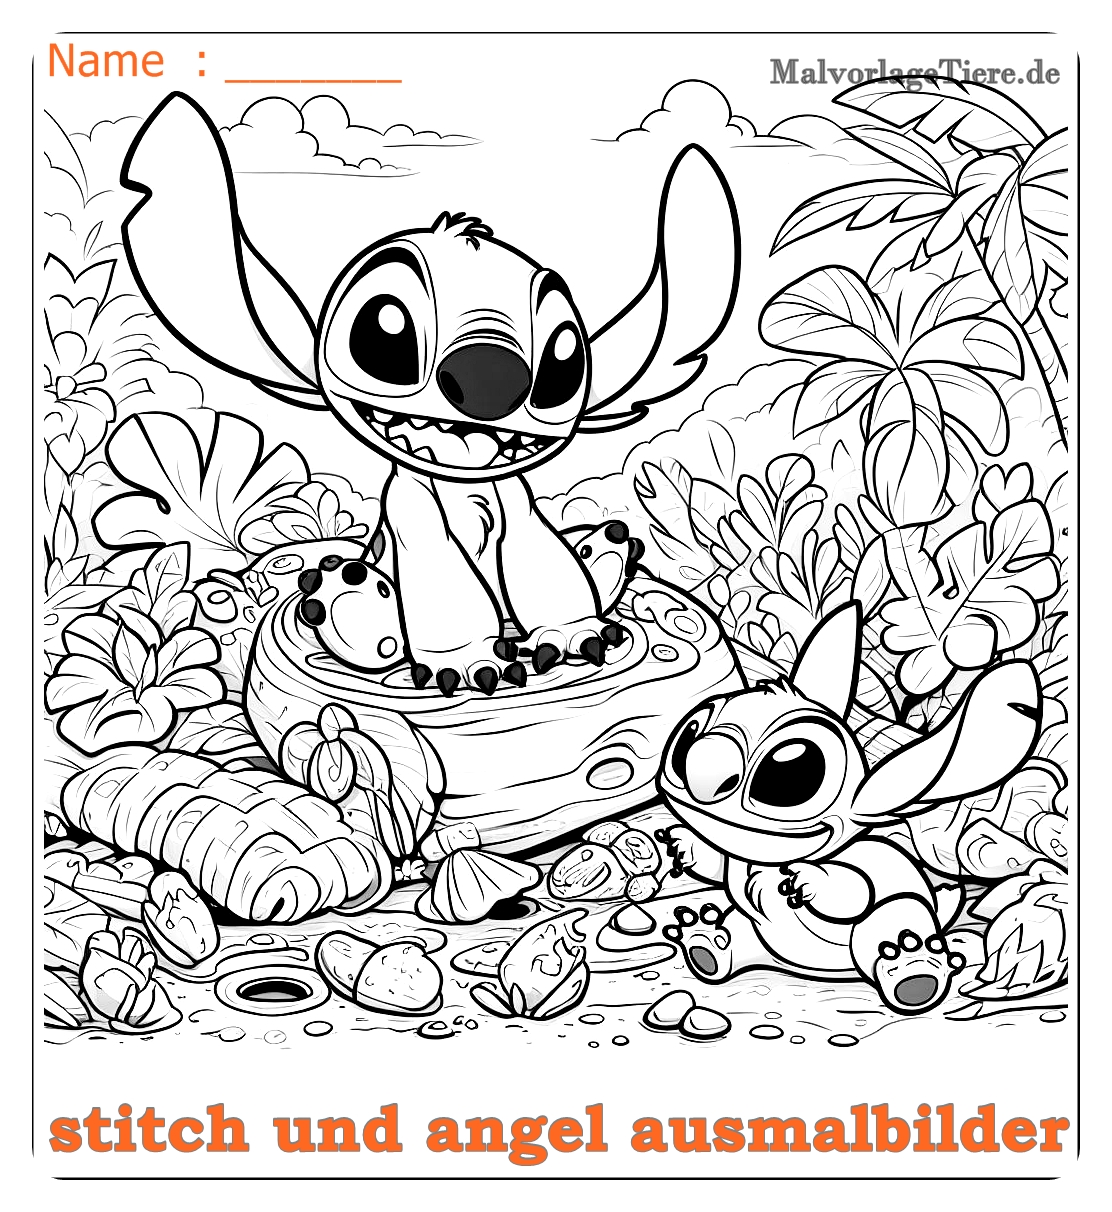 stitch und angel ausmalbilder06 by malvorlagetiere.de